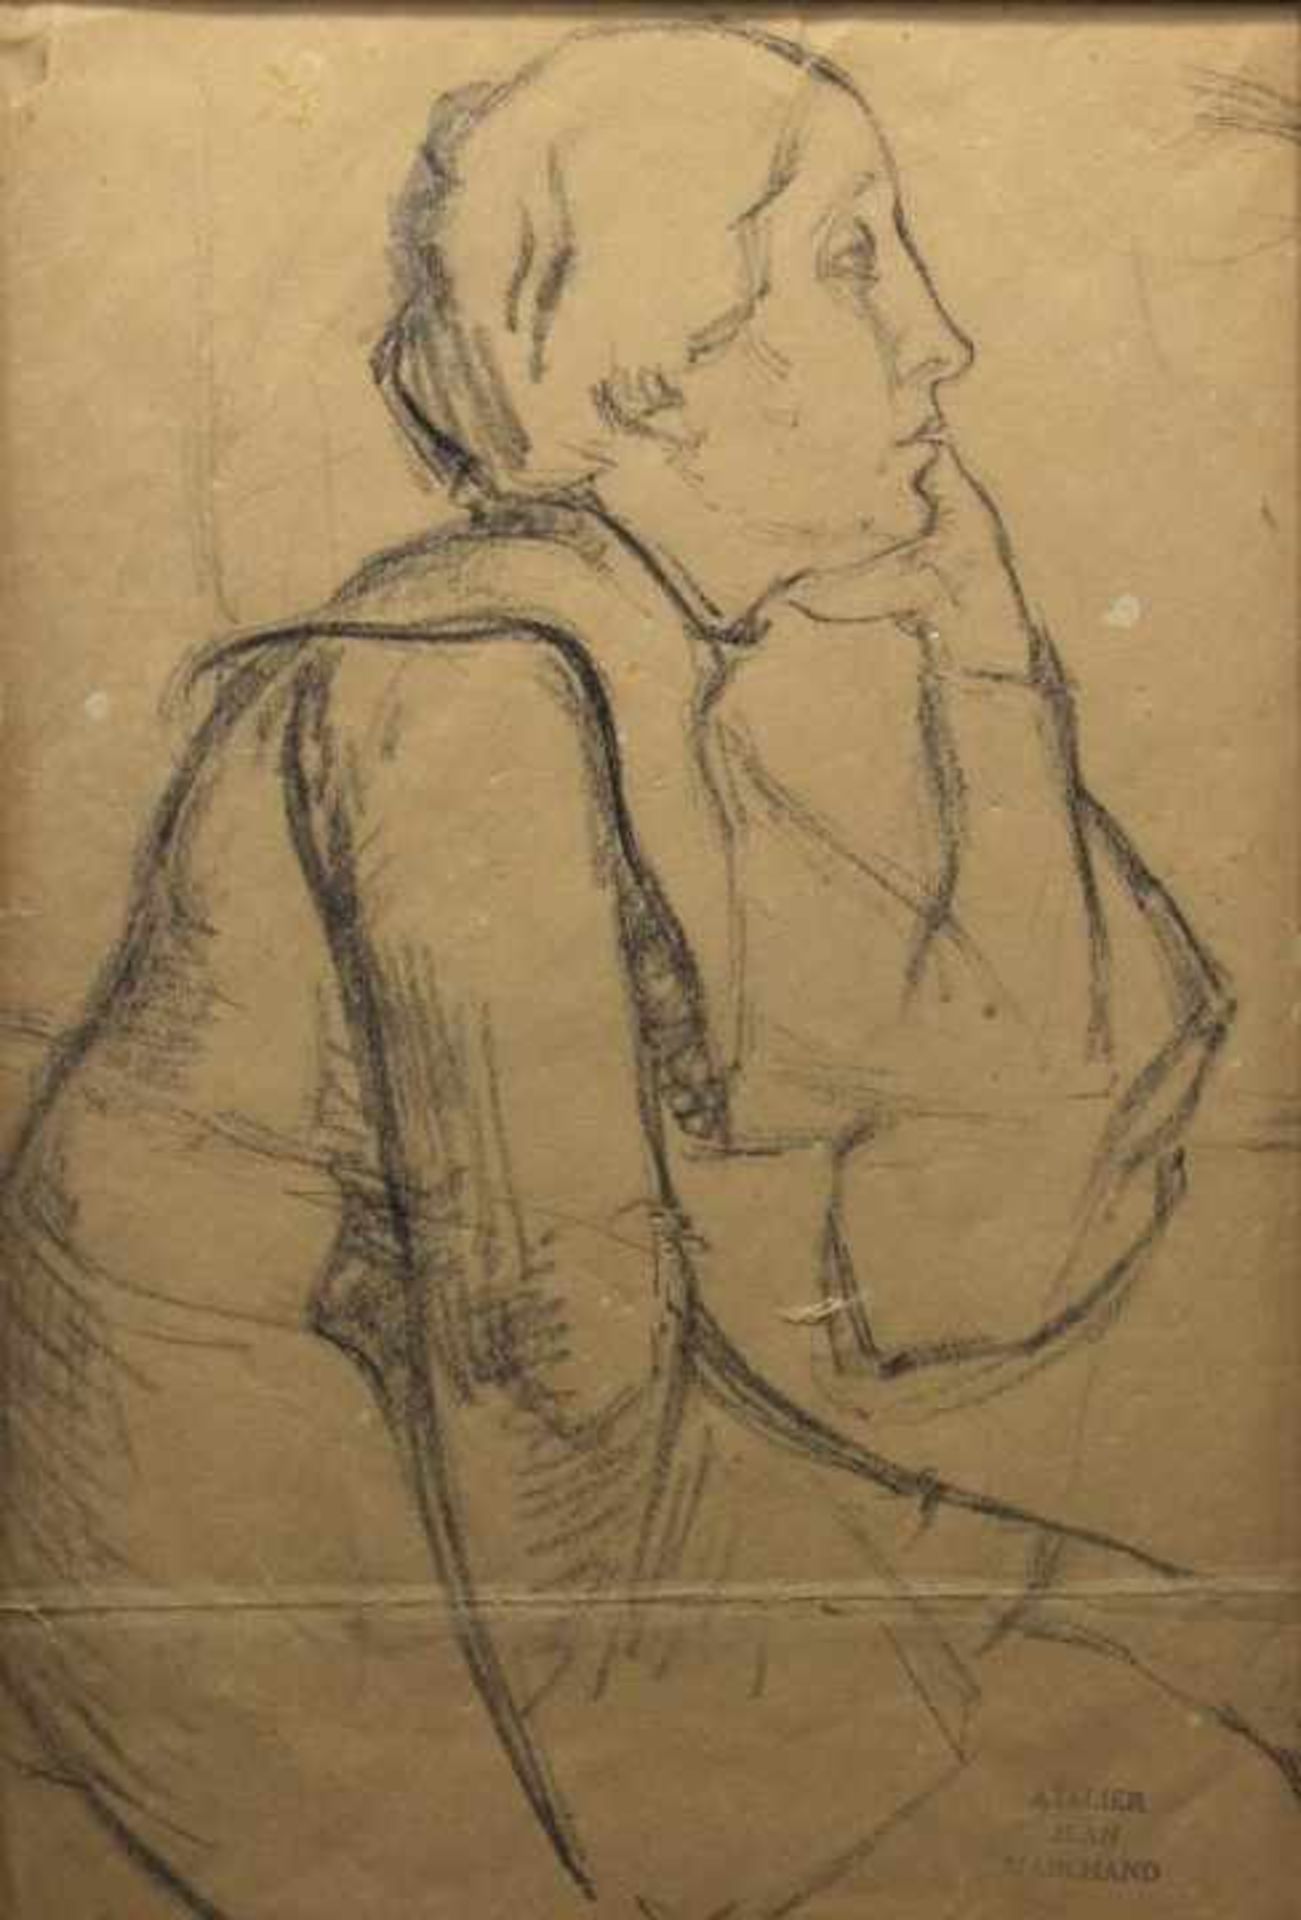 Zeichnung - Jean Hippolyte MARCHAND attr. (1883-1940 Paris) "Damenbildnis", r.u. Stempel "Atelier